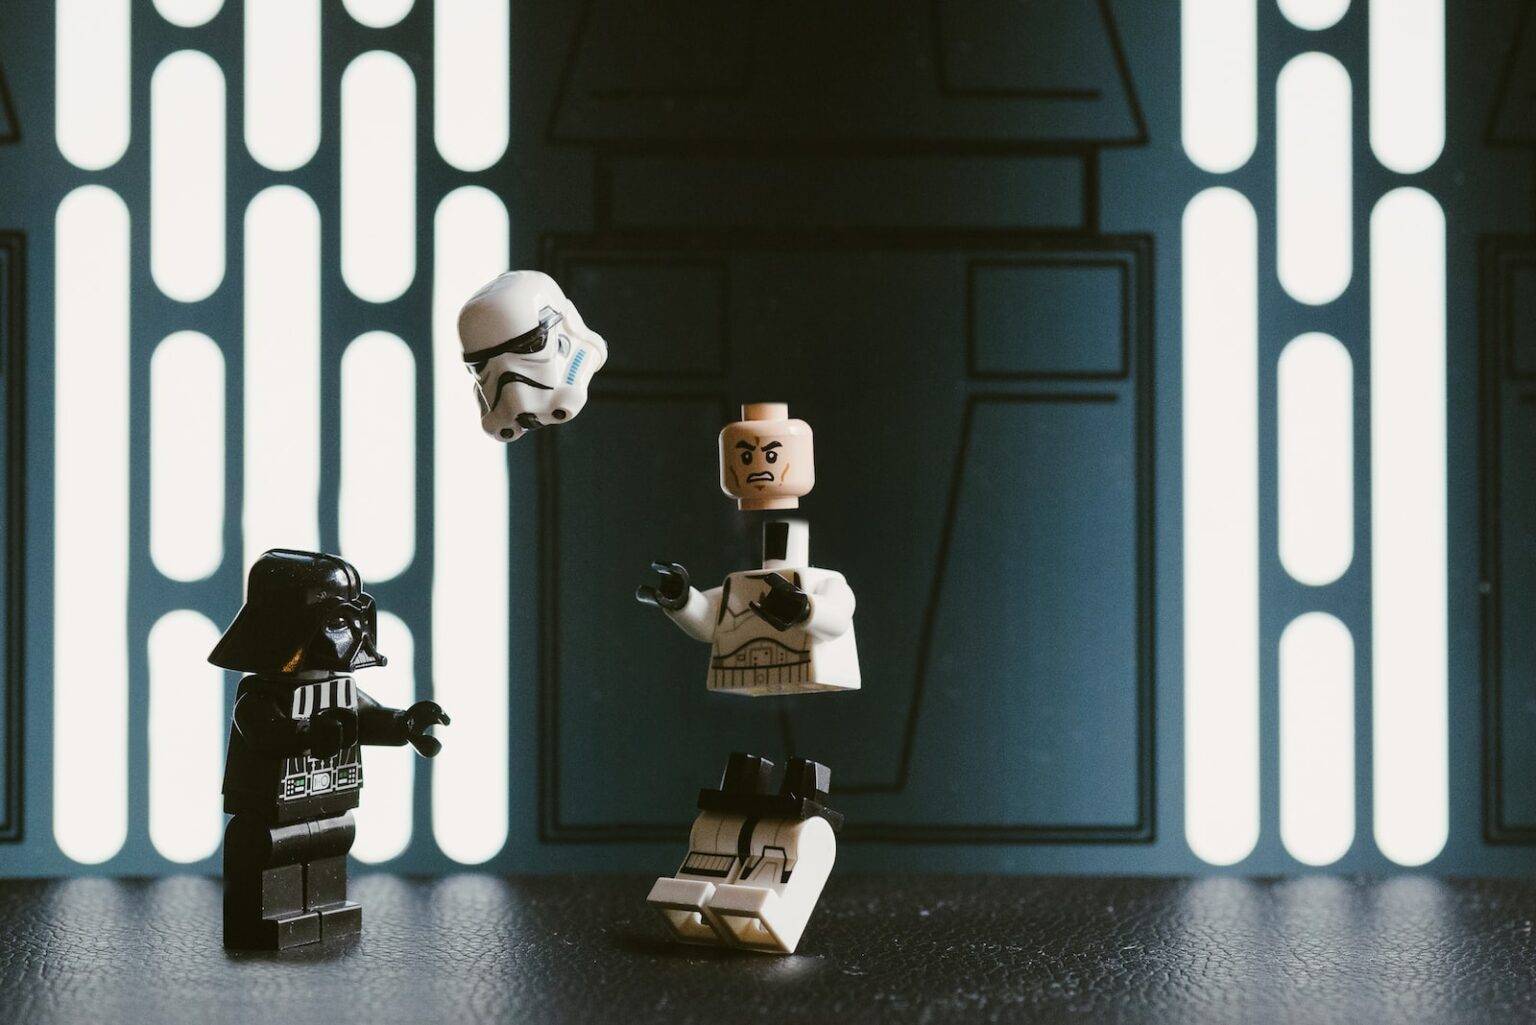 Darth Vader Lego figure beside Stormtrooper